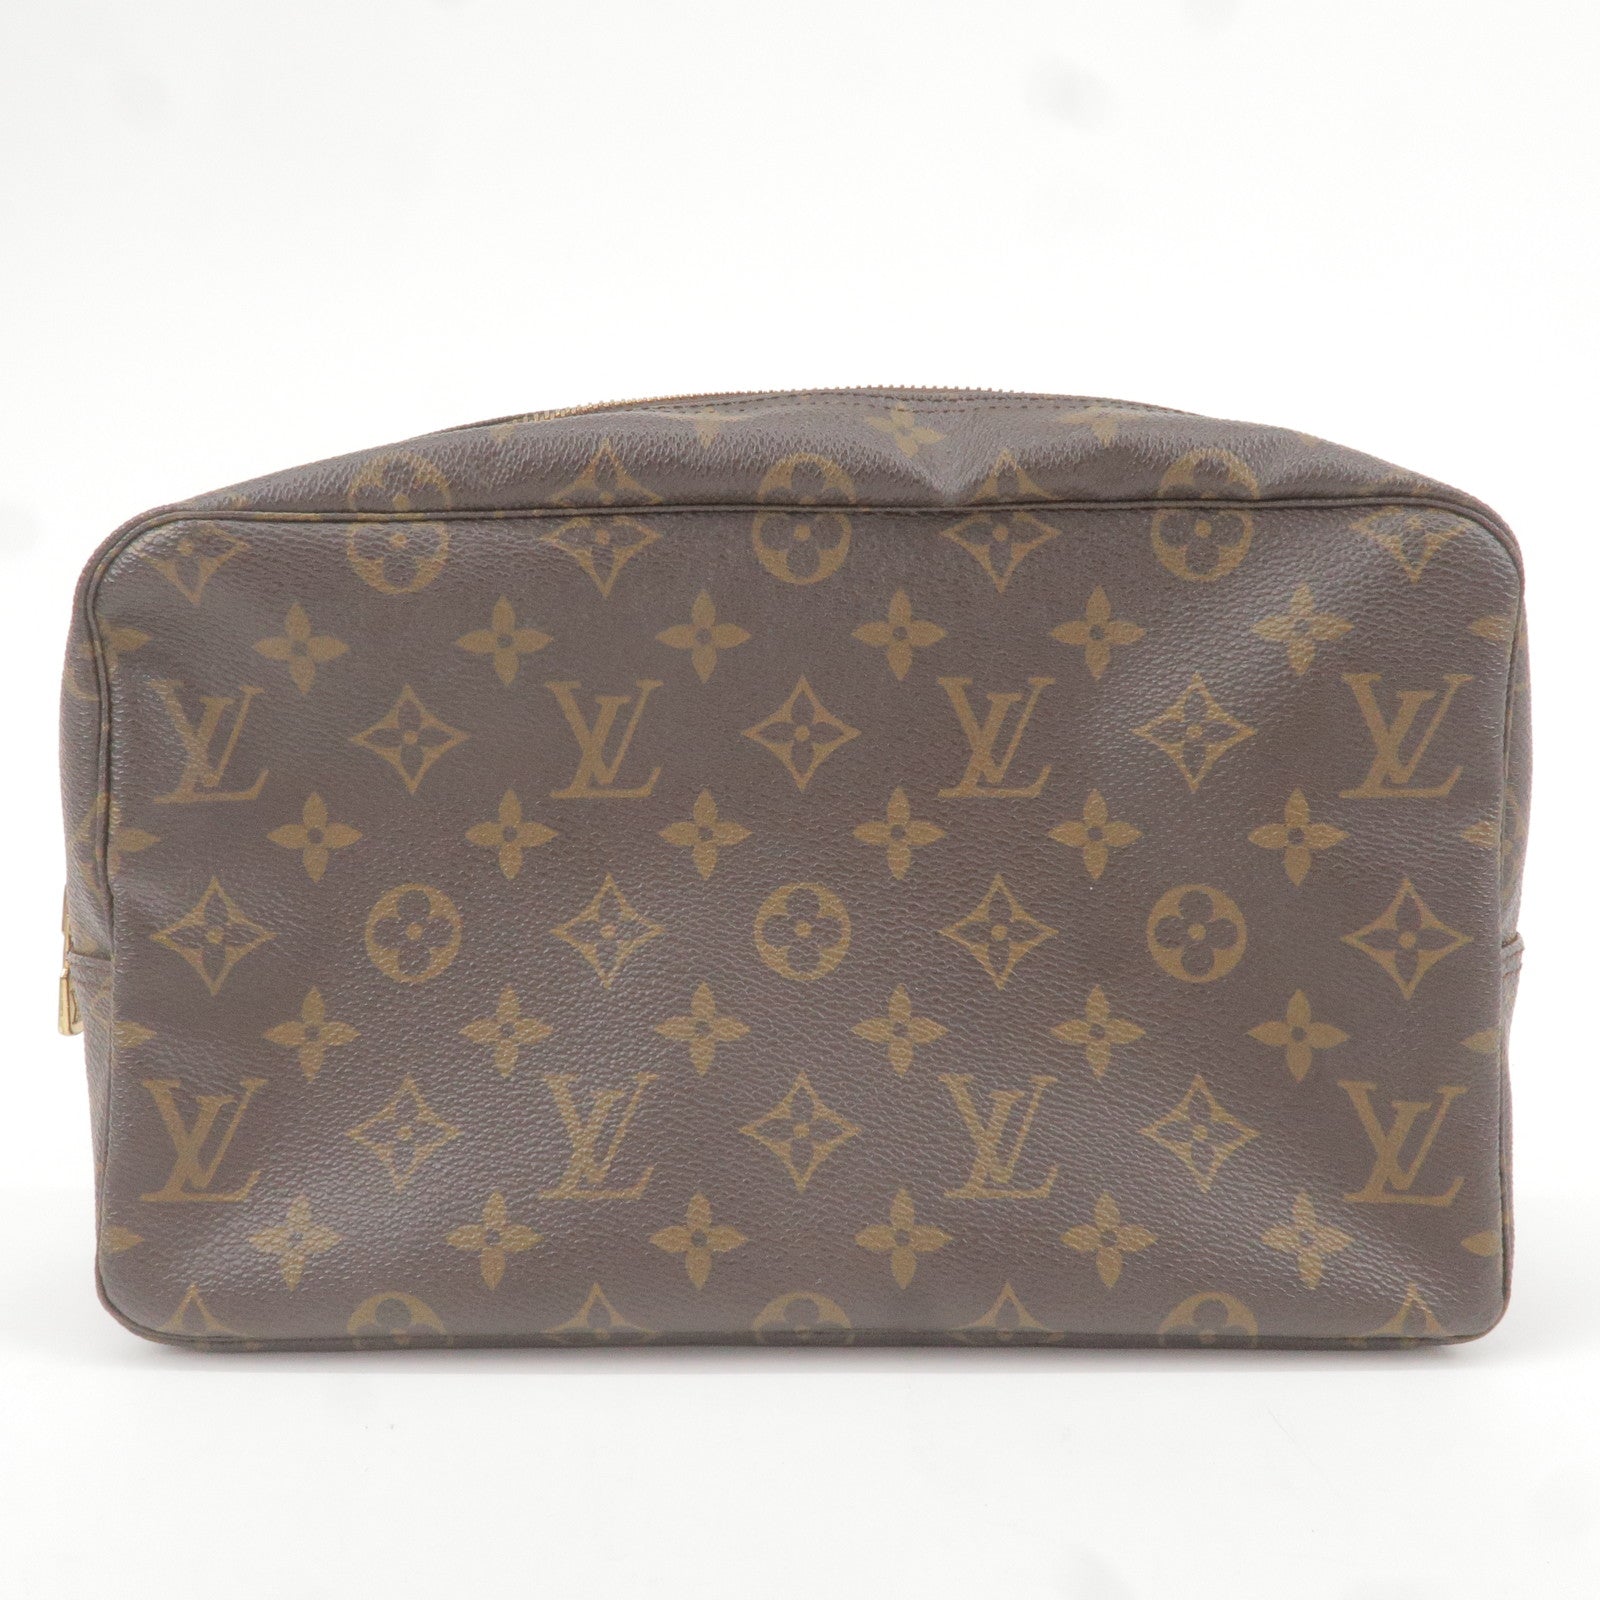 Preowned Louis Vuitton Trousse Toilette Monogram Canvas Cosmetic Bag